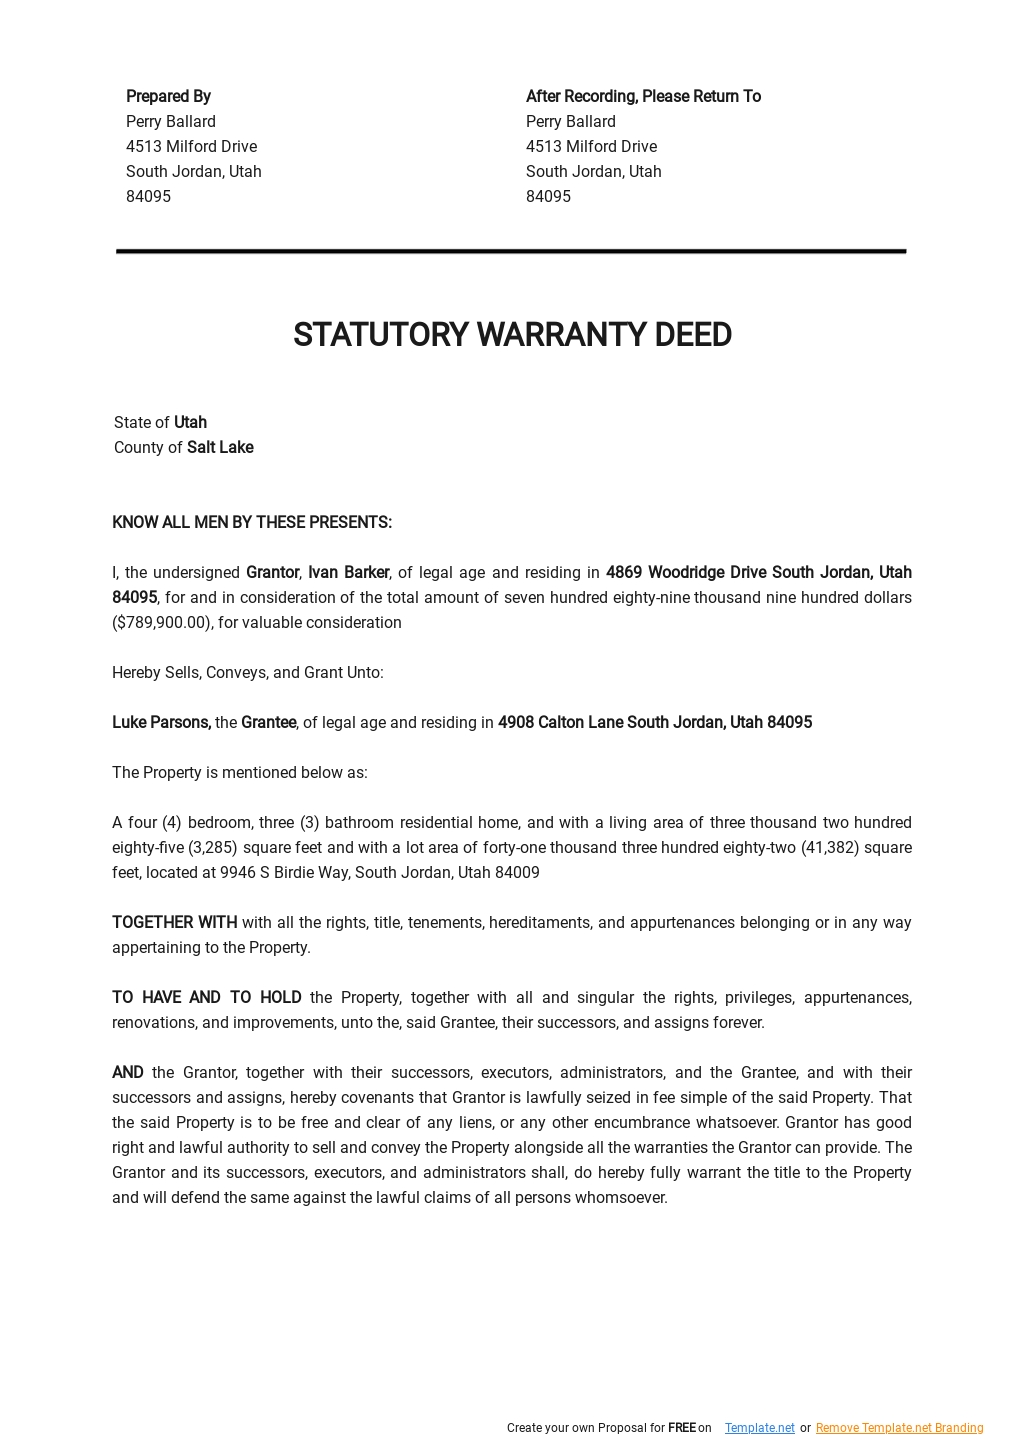 Statutory Warranty Deed Template